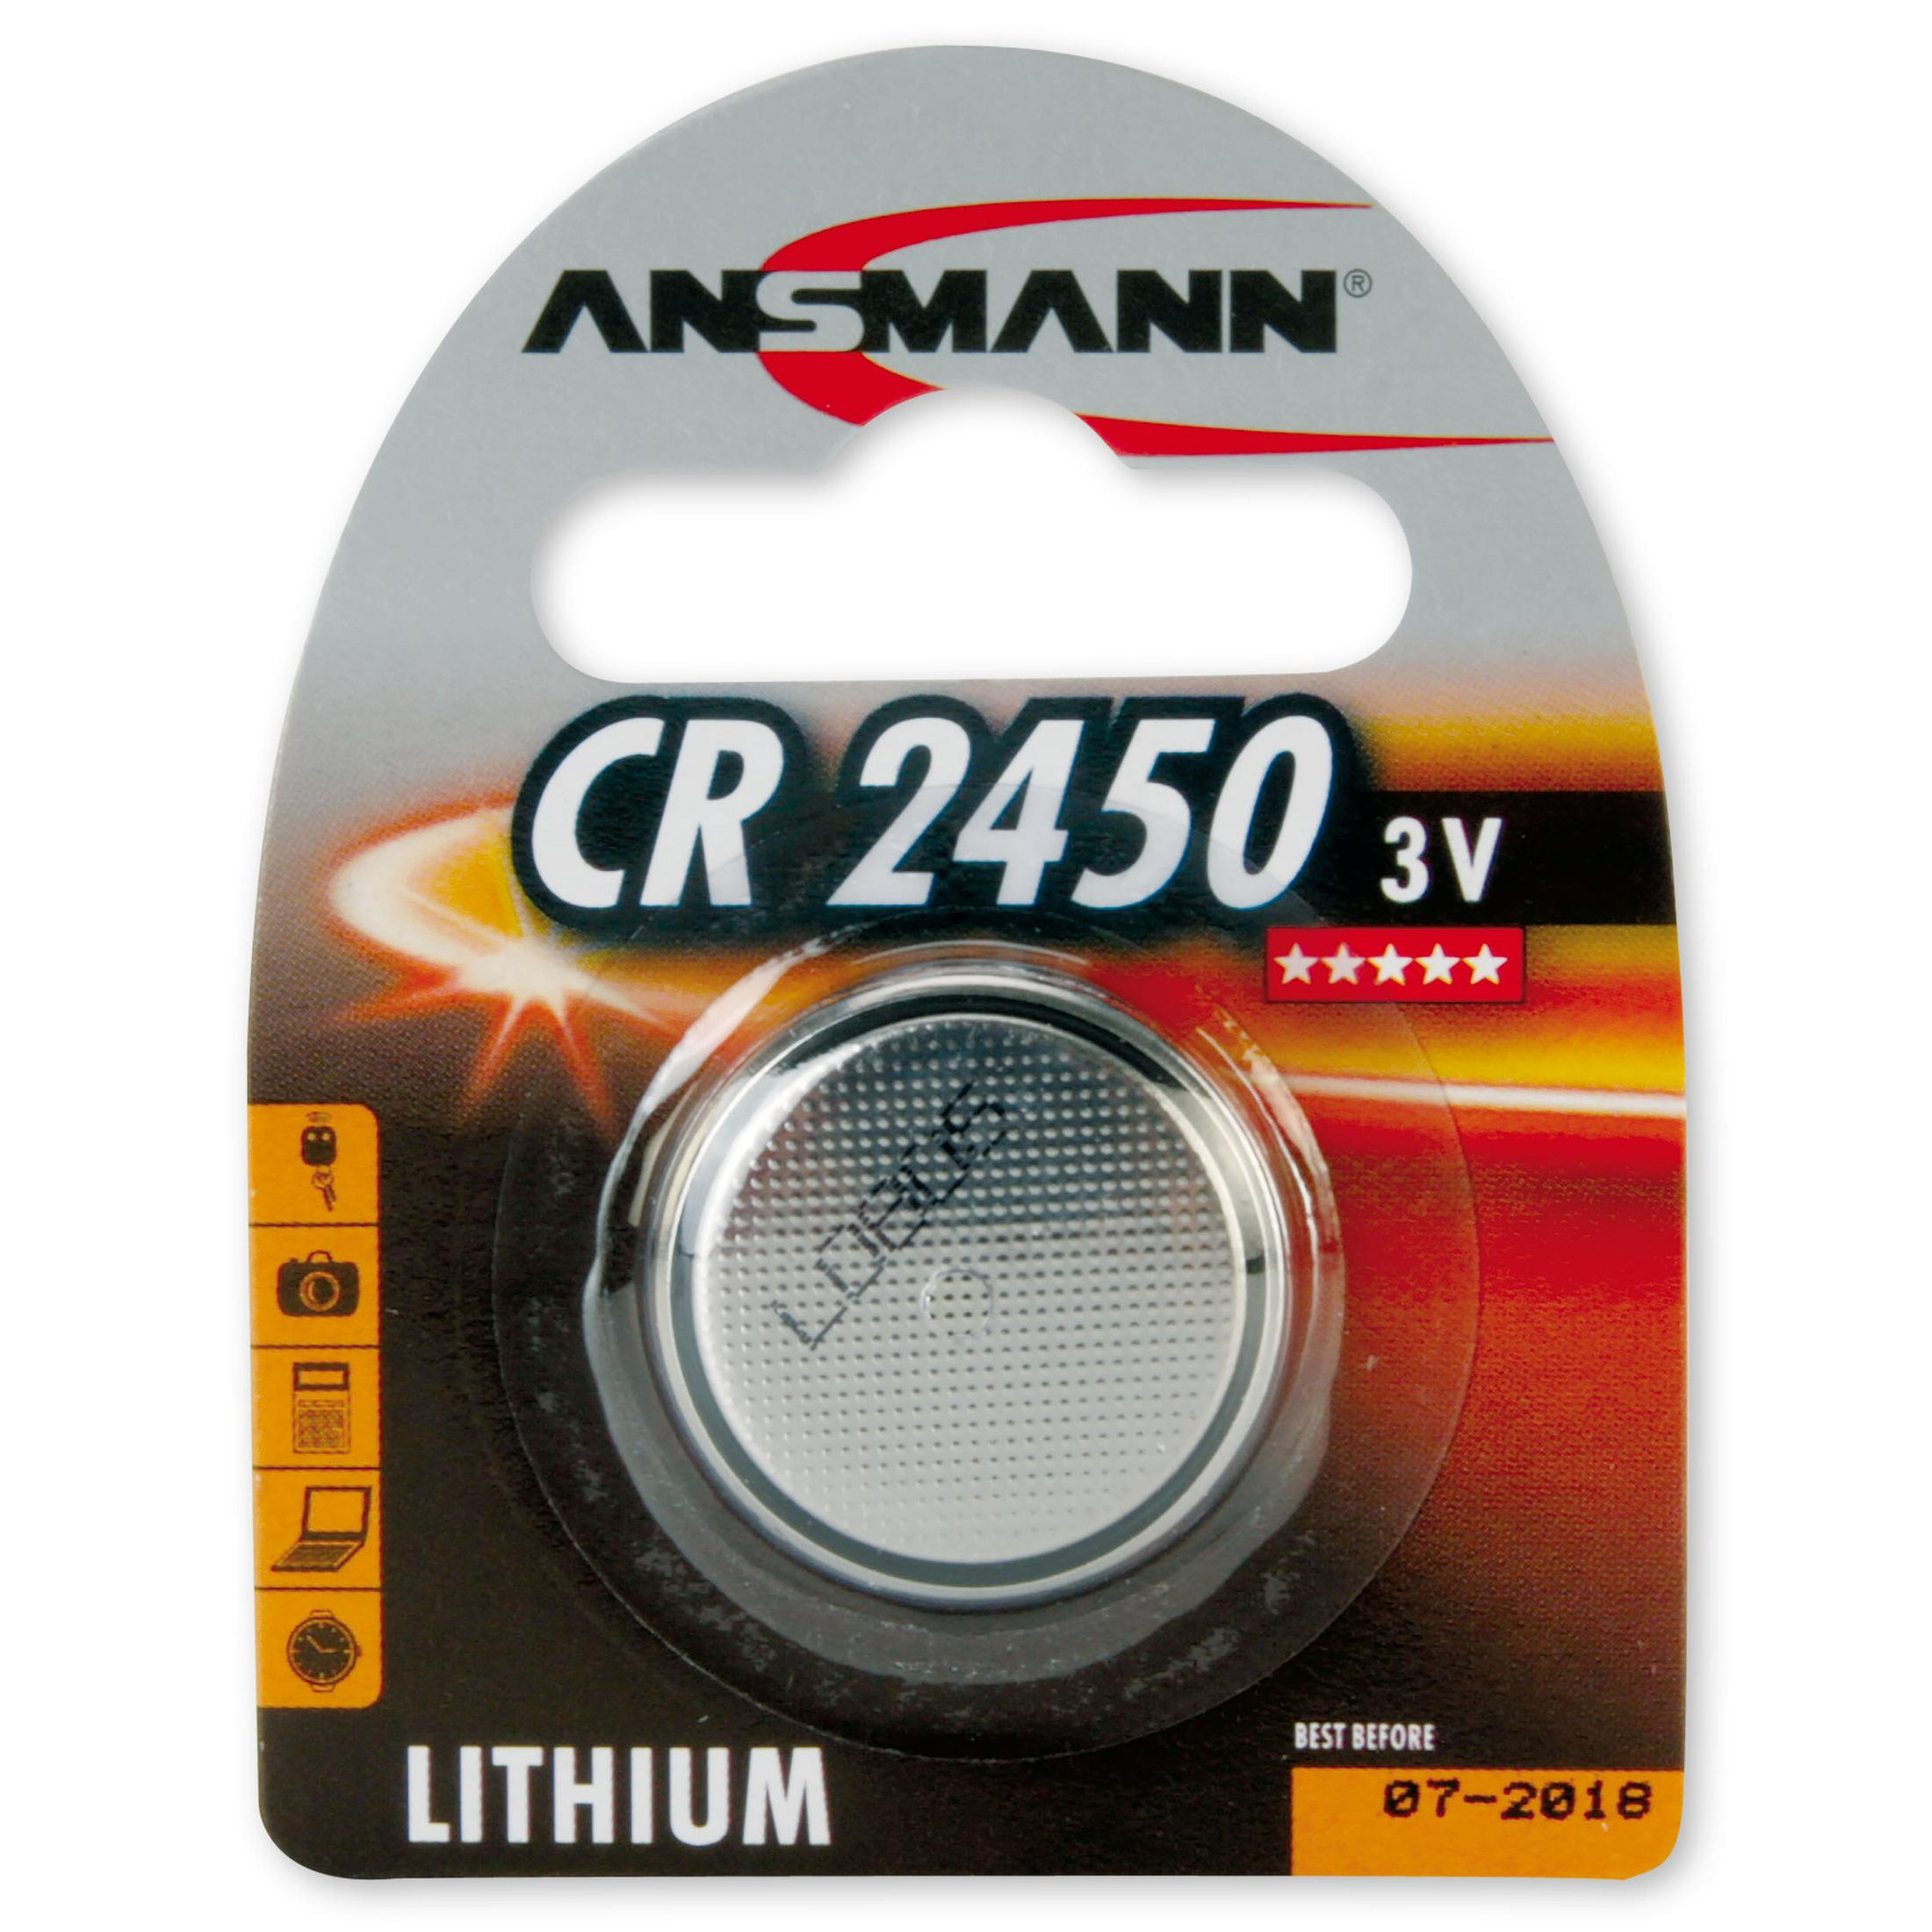 ANSMANN ANSMANN 5020112 Knopfzelle 1 Energie / 3 3V Knopfzellen, Strom Stück / Lithium Licht Li-lon, Knopfzellen CR2450 Volt